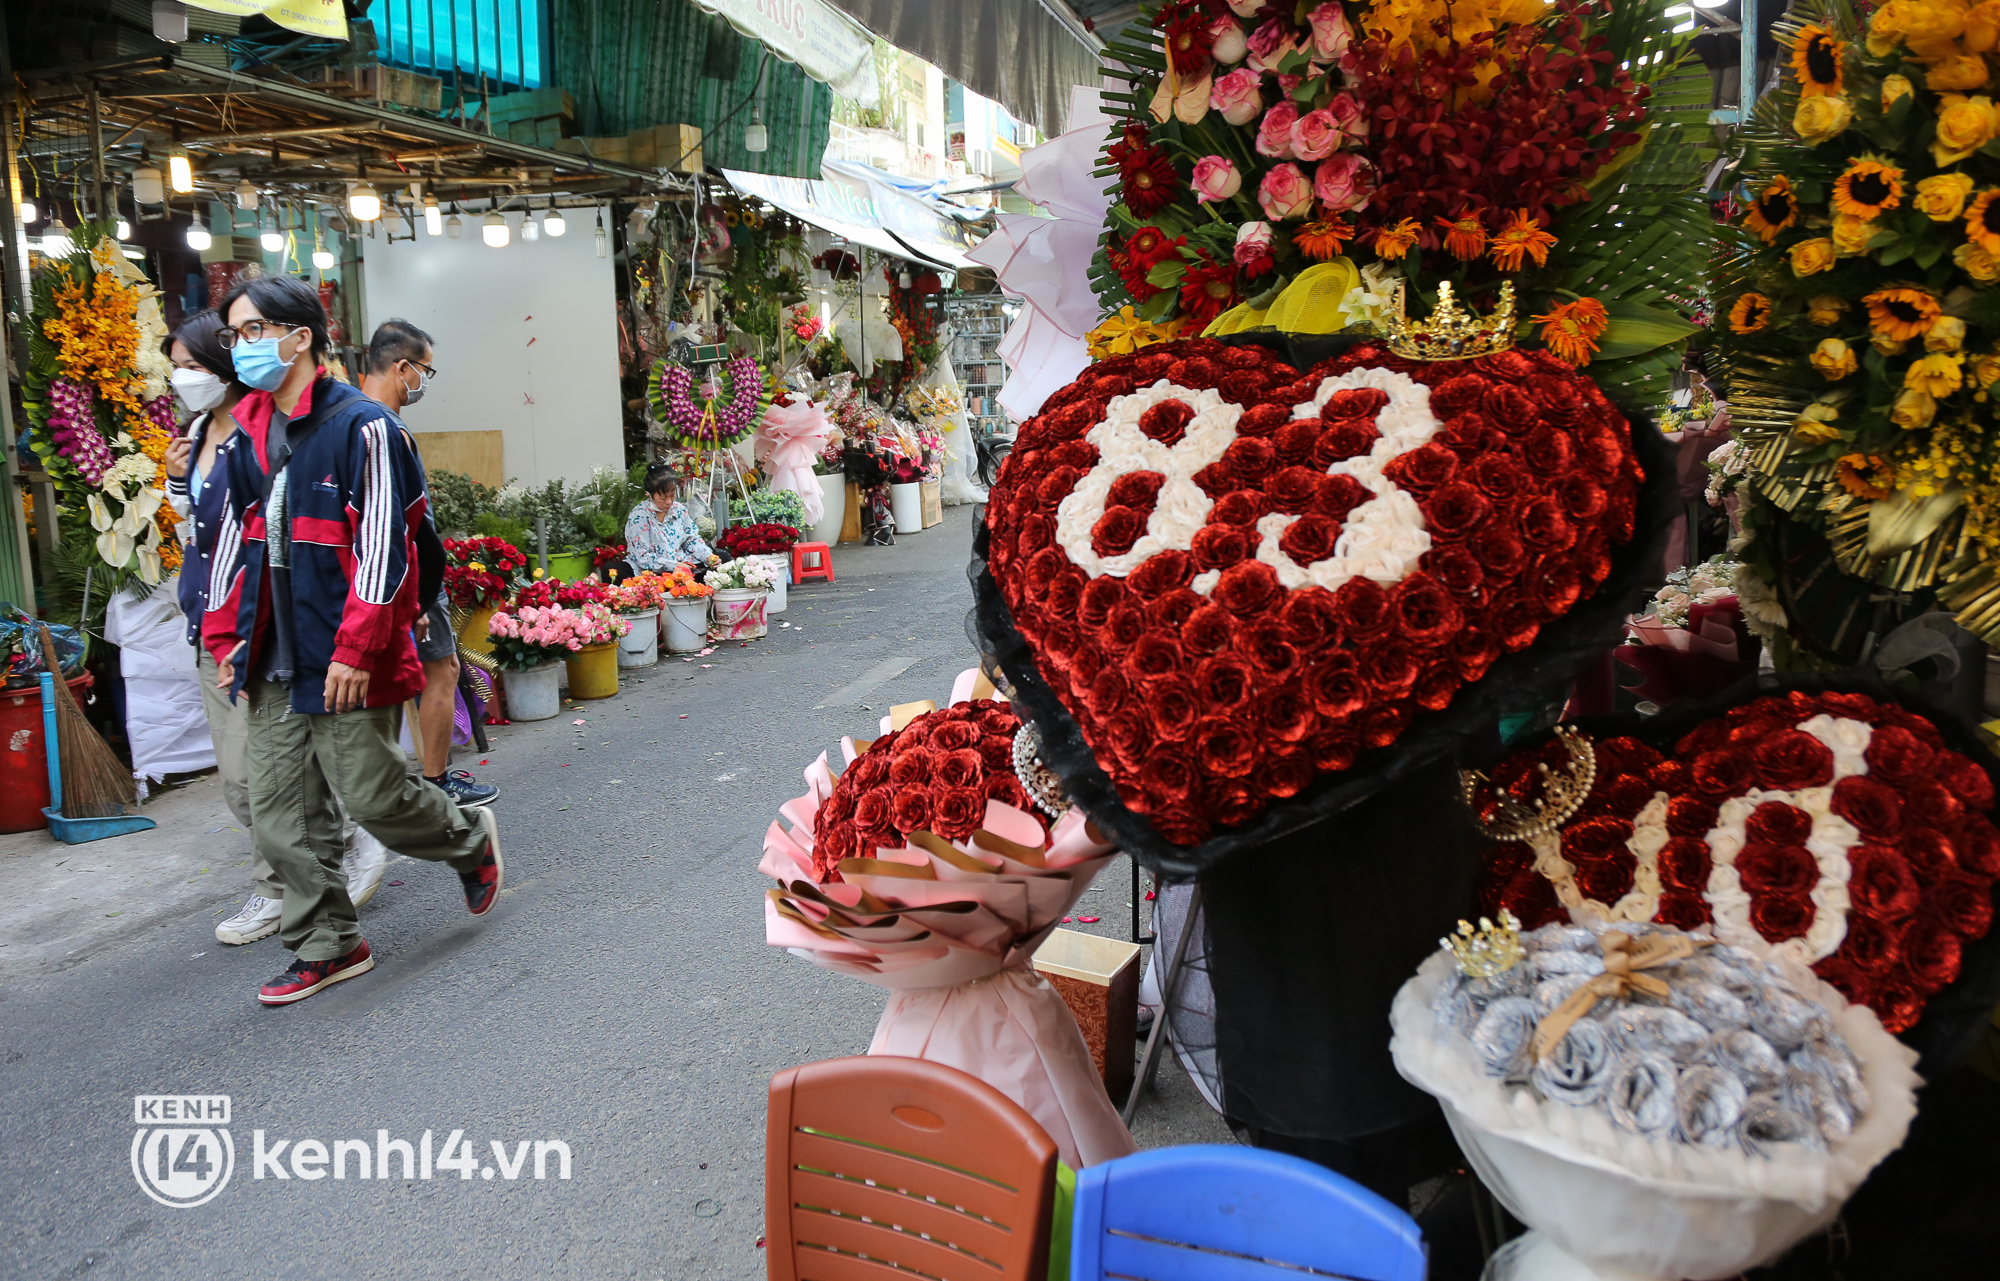 Lẵng hoa trái tim mừng 8/3 giá hàng triệu đồng hút khách tại chợ ...